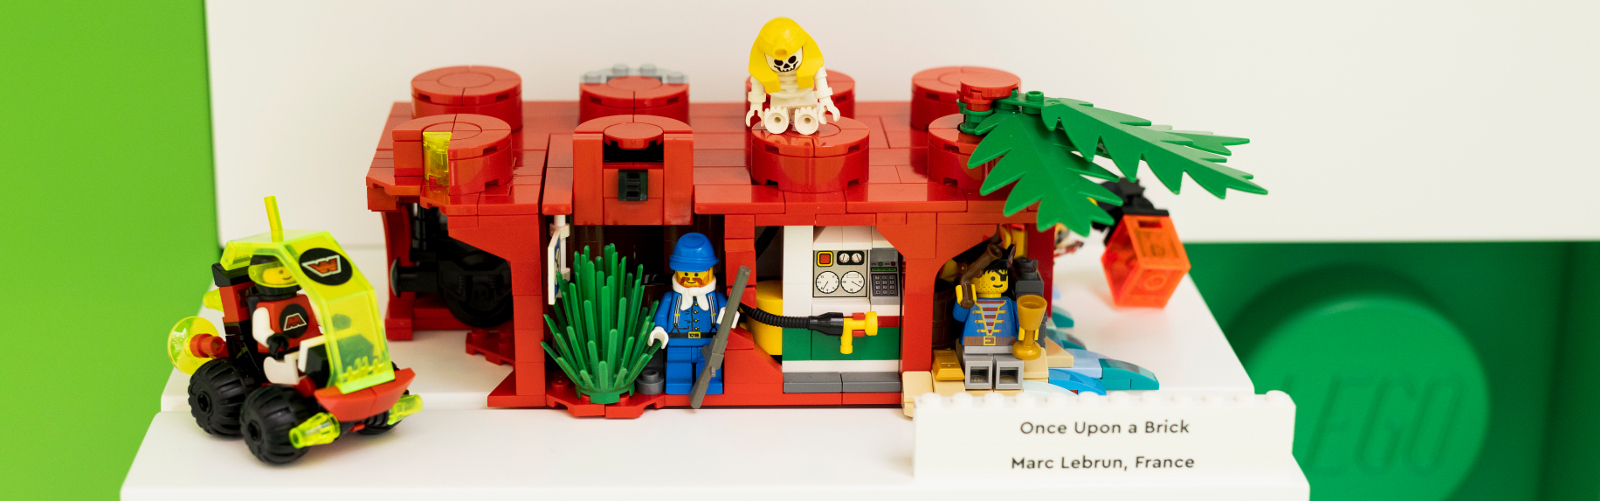 Lego MOC brick